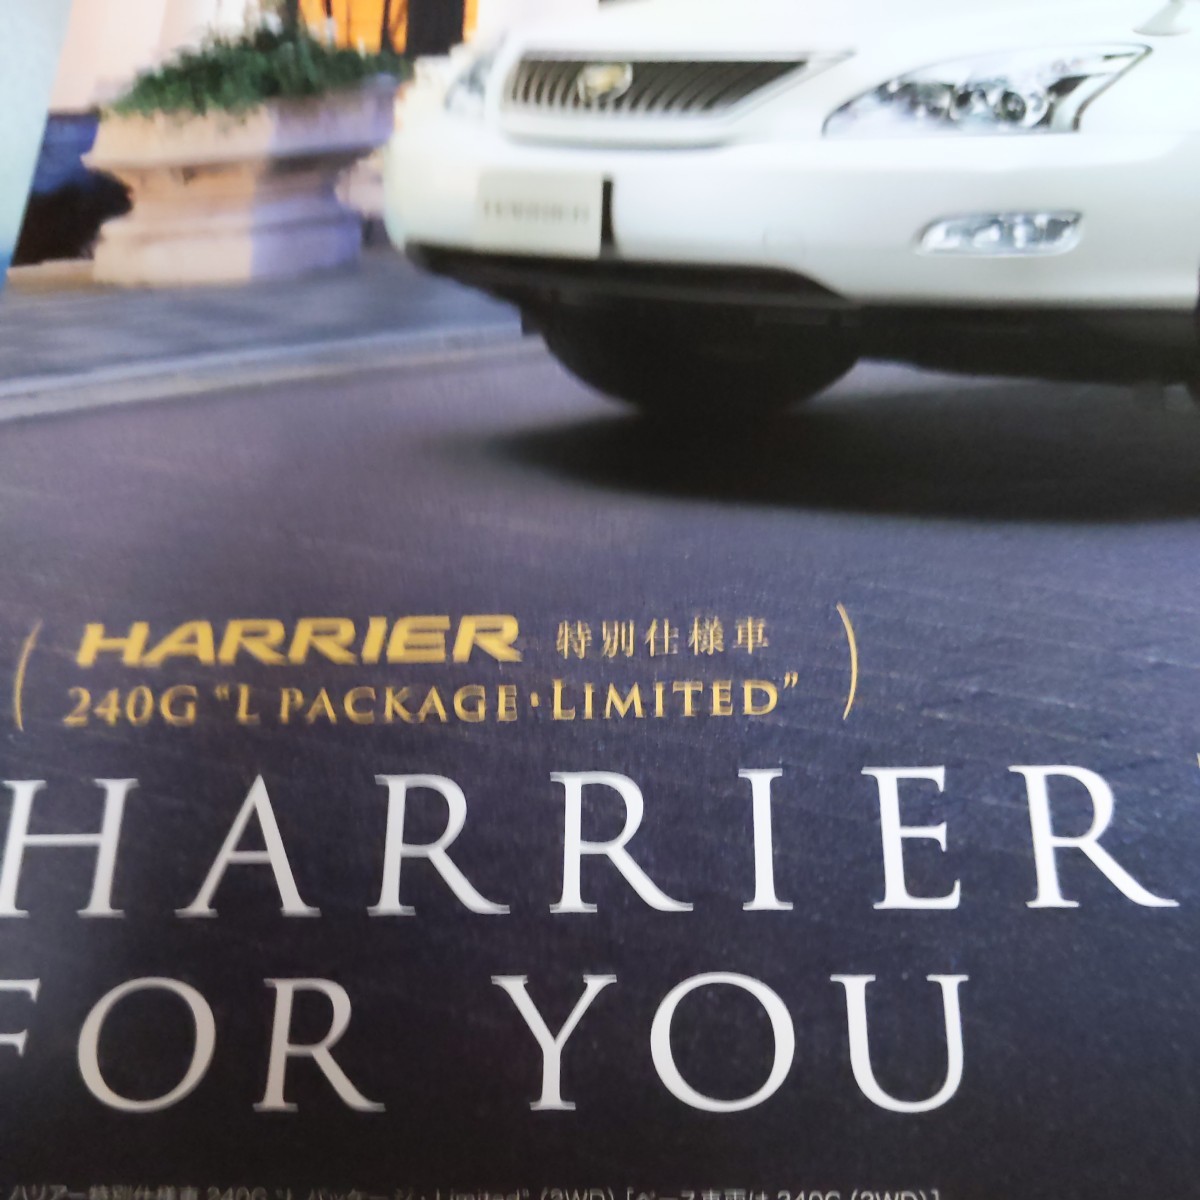  Toyota Harrier каталог [2010.8] специальный выпуск 240G_L упаковка ограниченный ( не продается ) трудно найти 